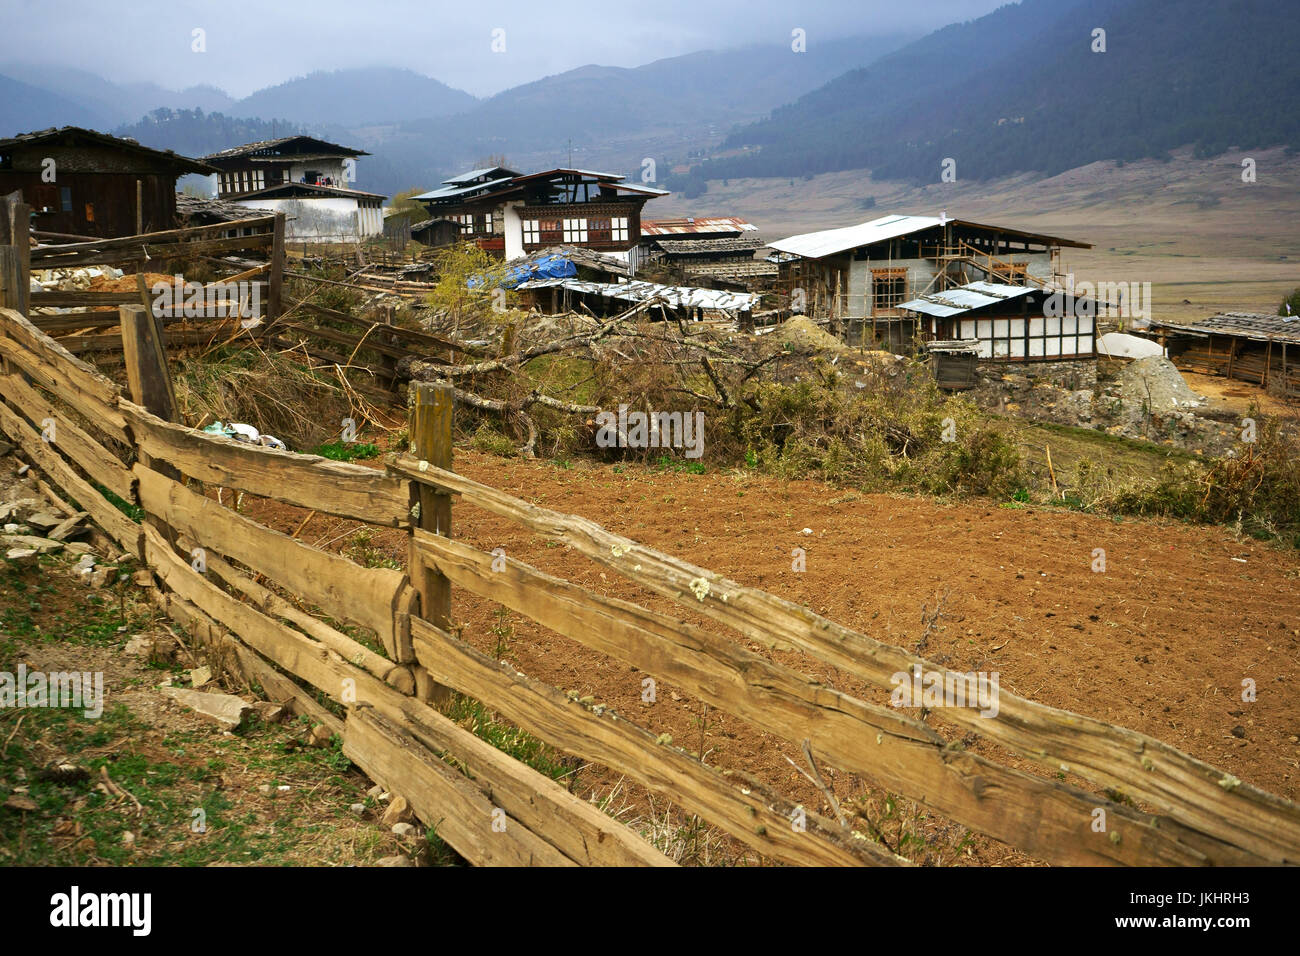 Fermes avec barrières en bois, vallée de Phobjikha, Bhoutan Banque D'Images